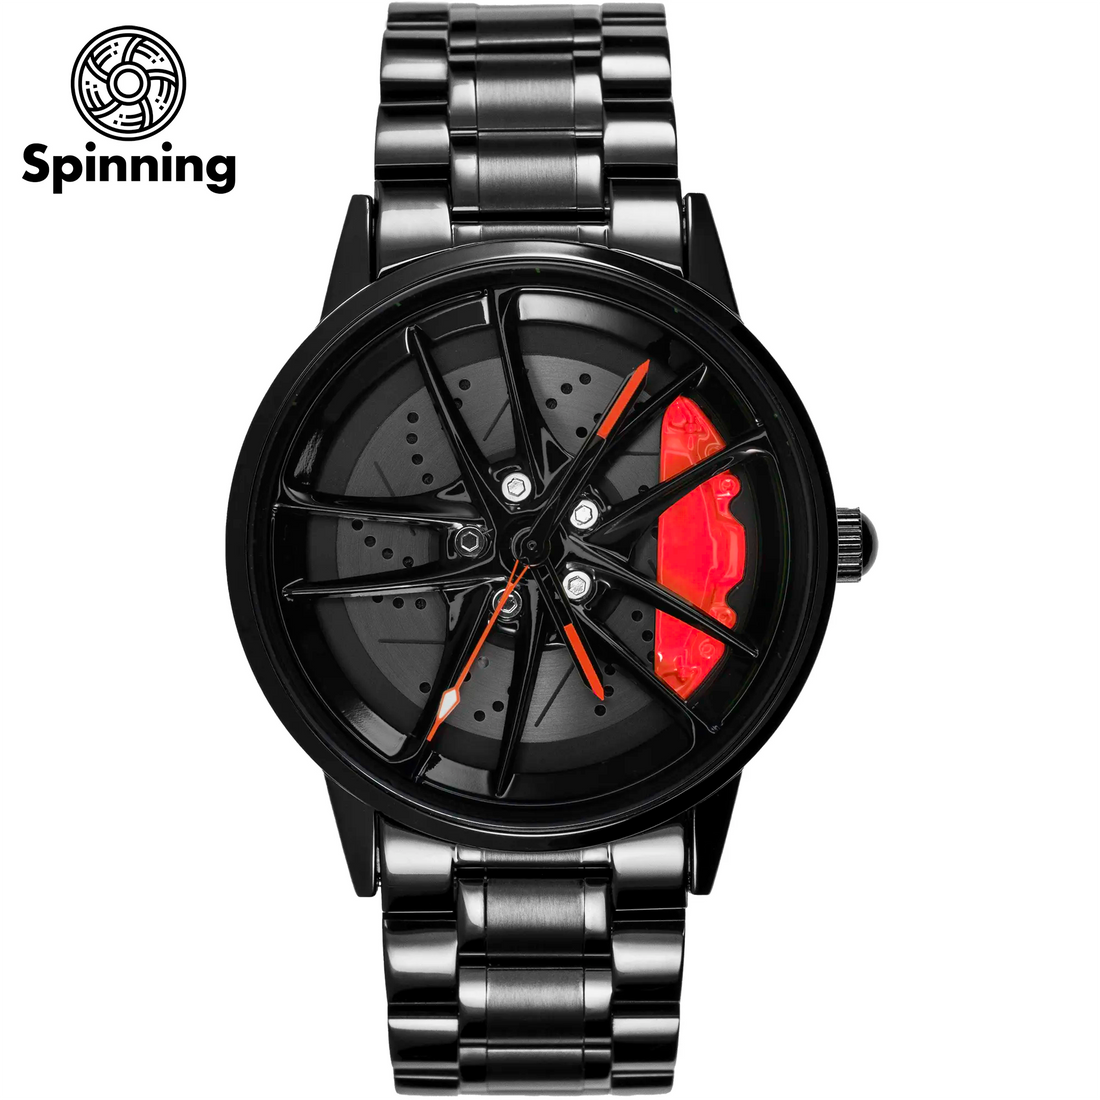 HMNWatch GR Supra Toyota Supra watches car rim watches toyota car wheel watches spinning car rim watches